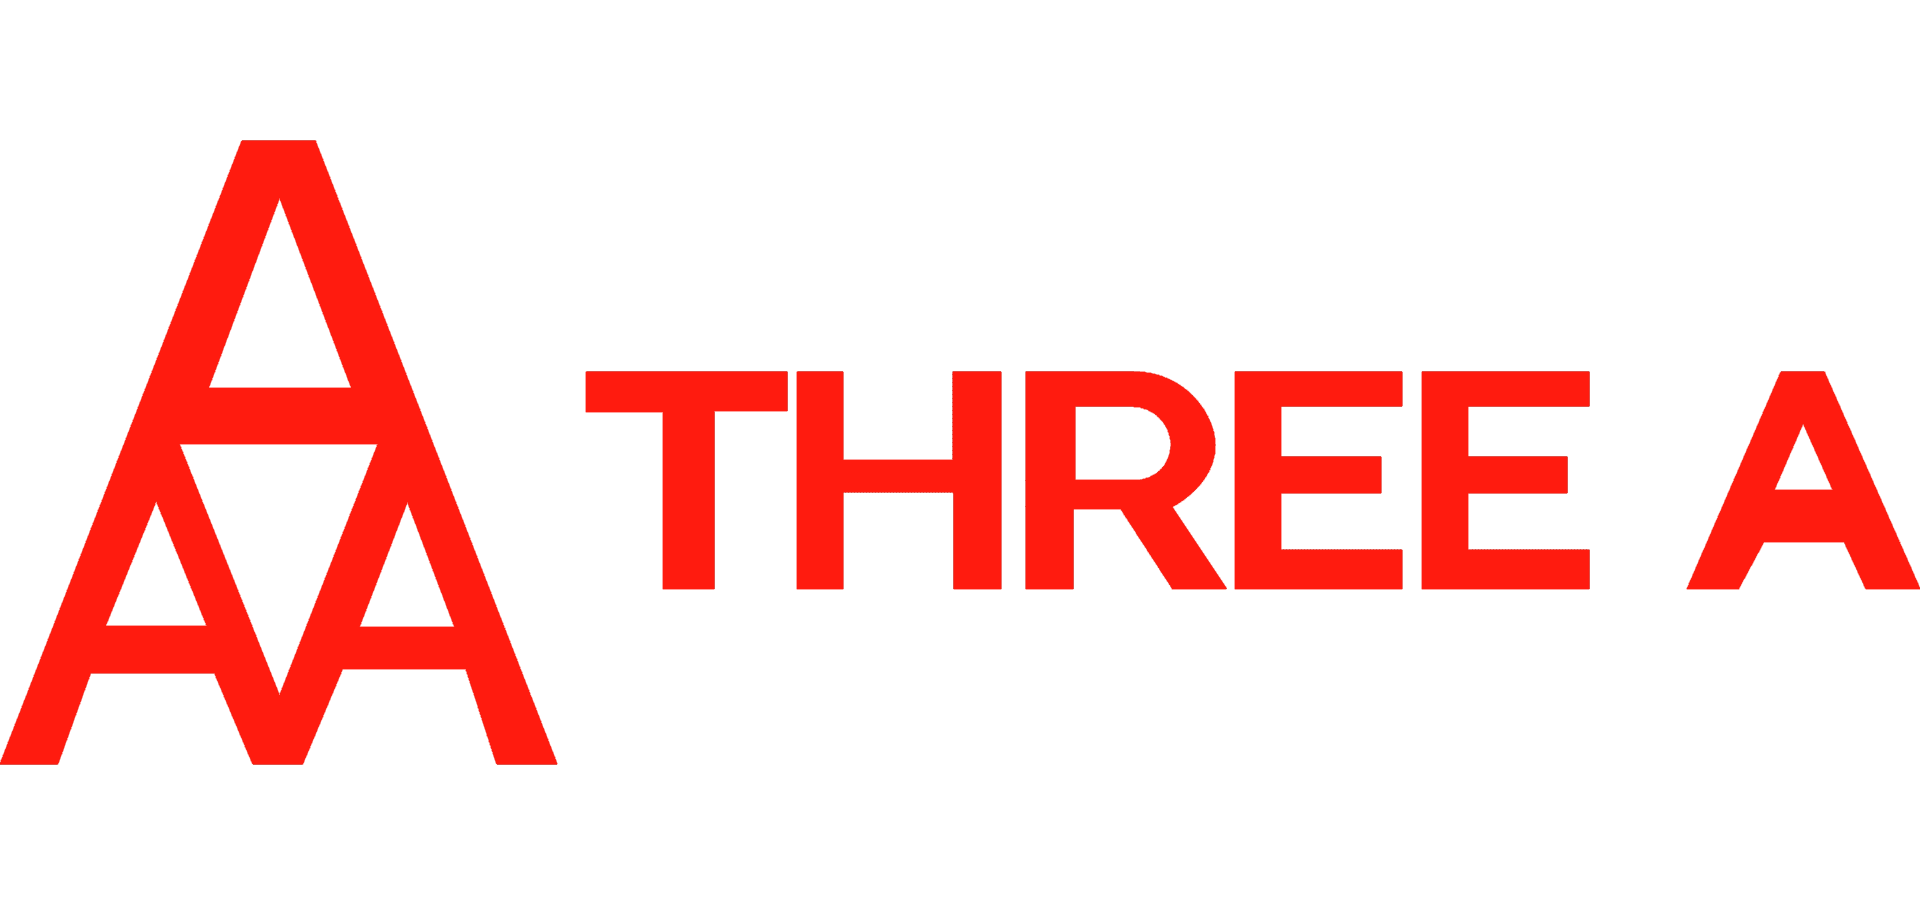 Three A